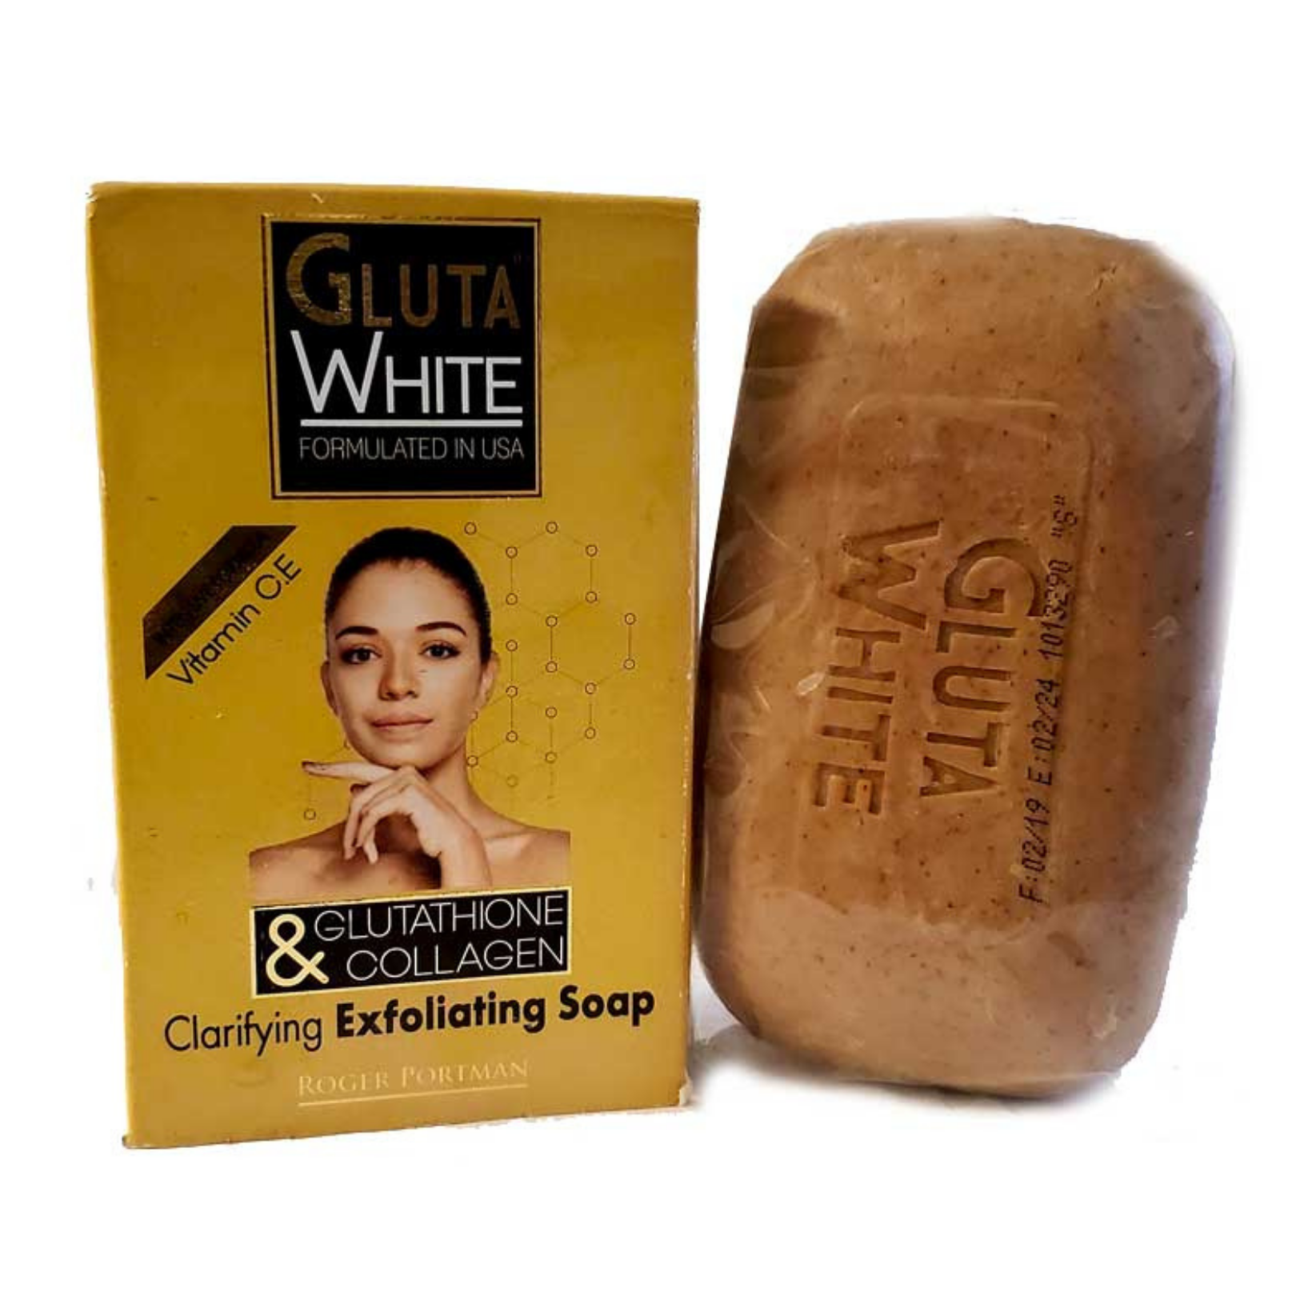 Gluta White Glutathione & Collagen exfoliating soap